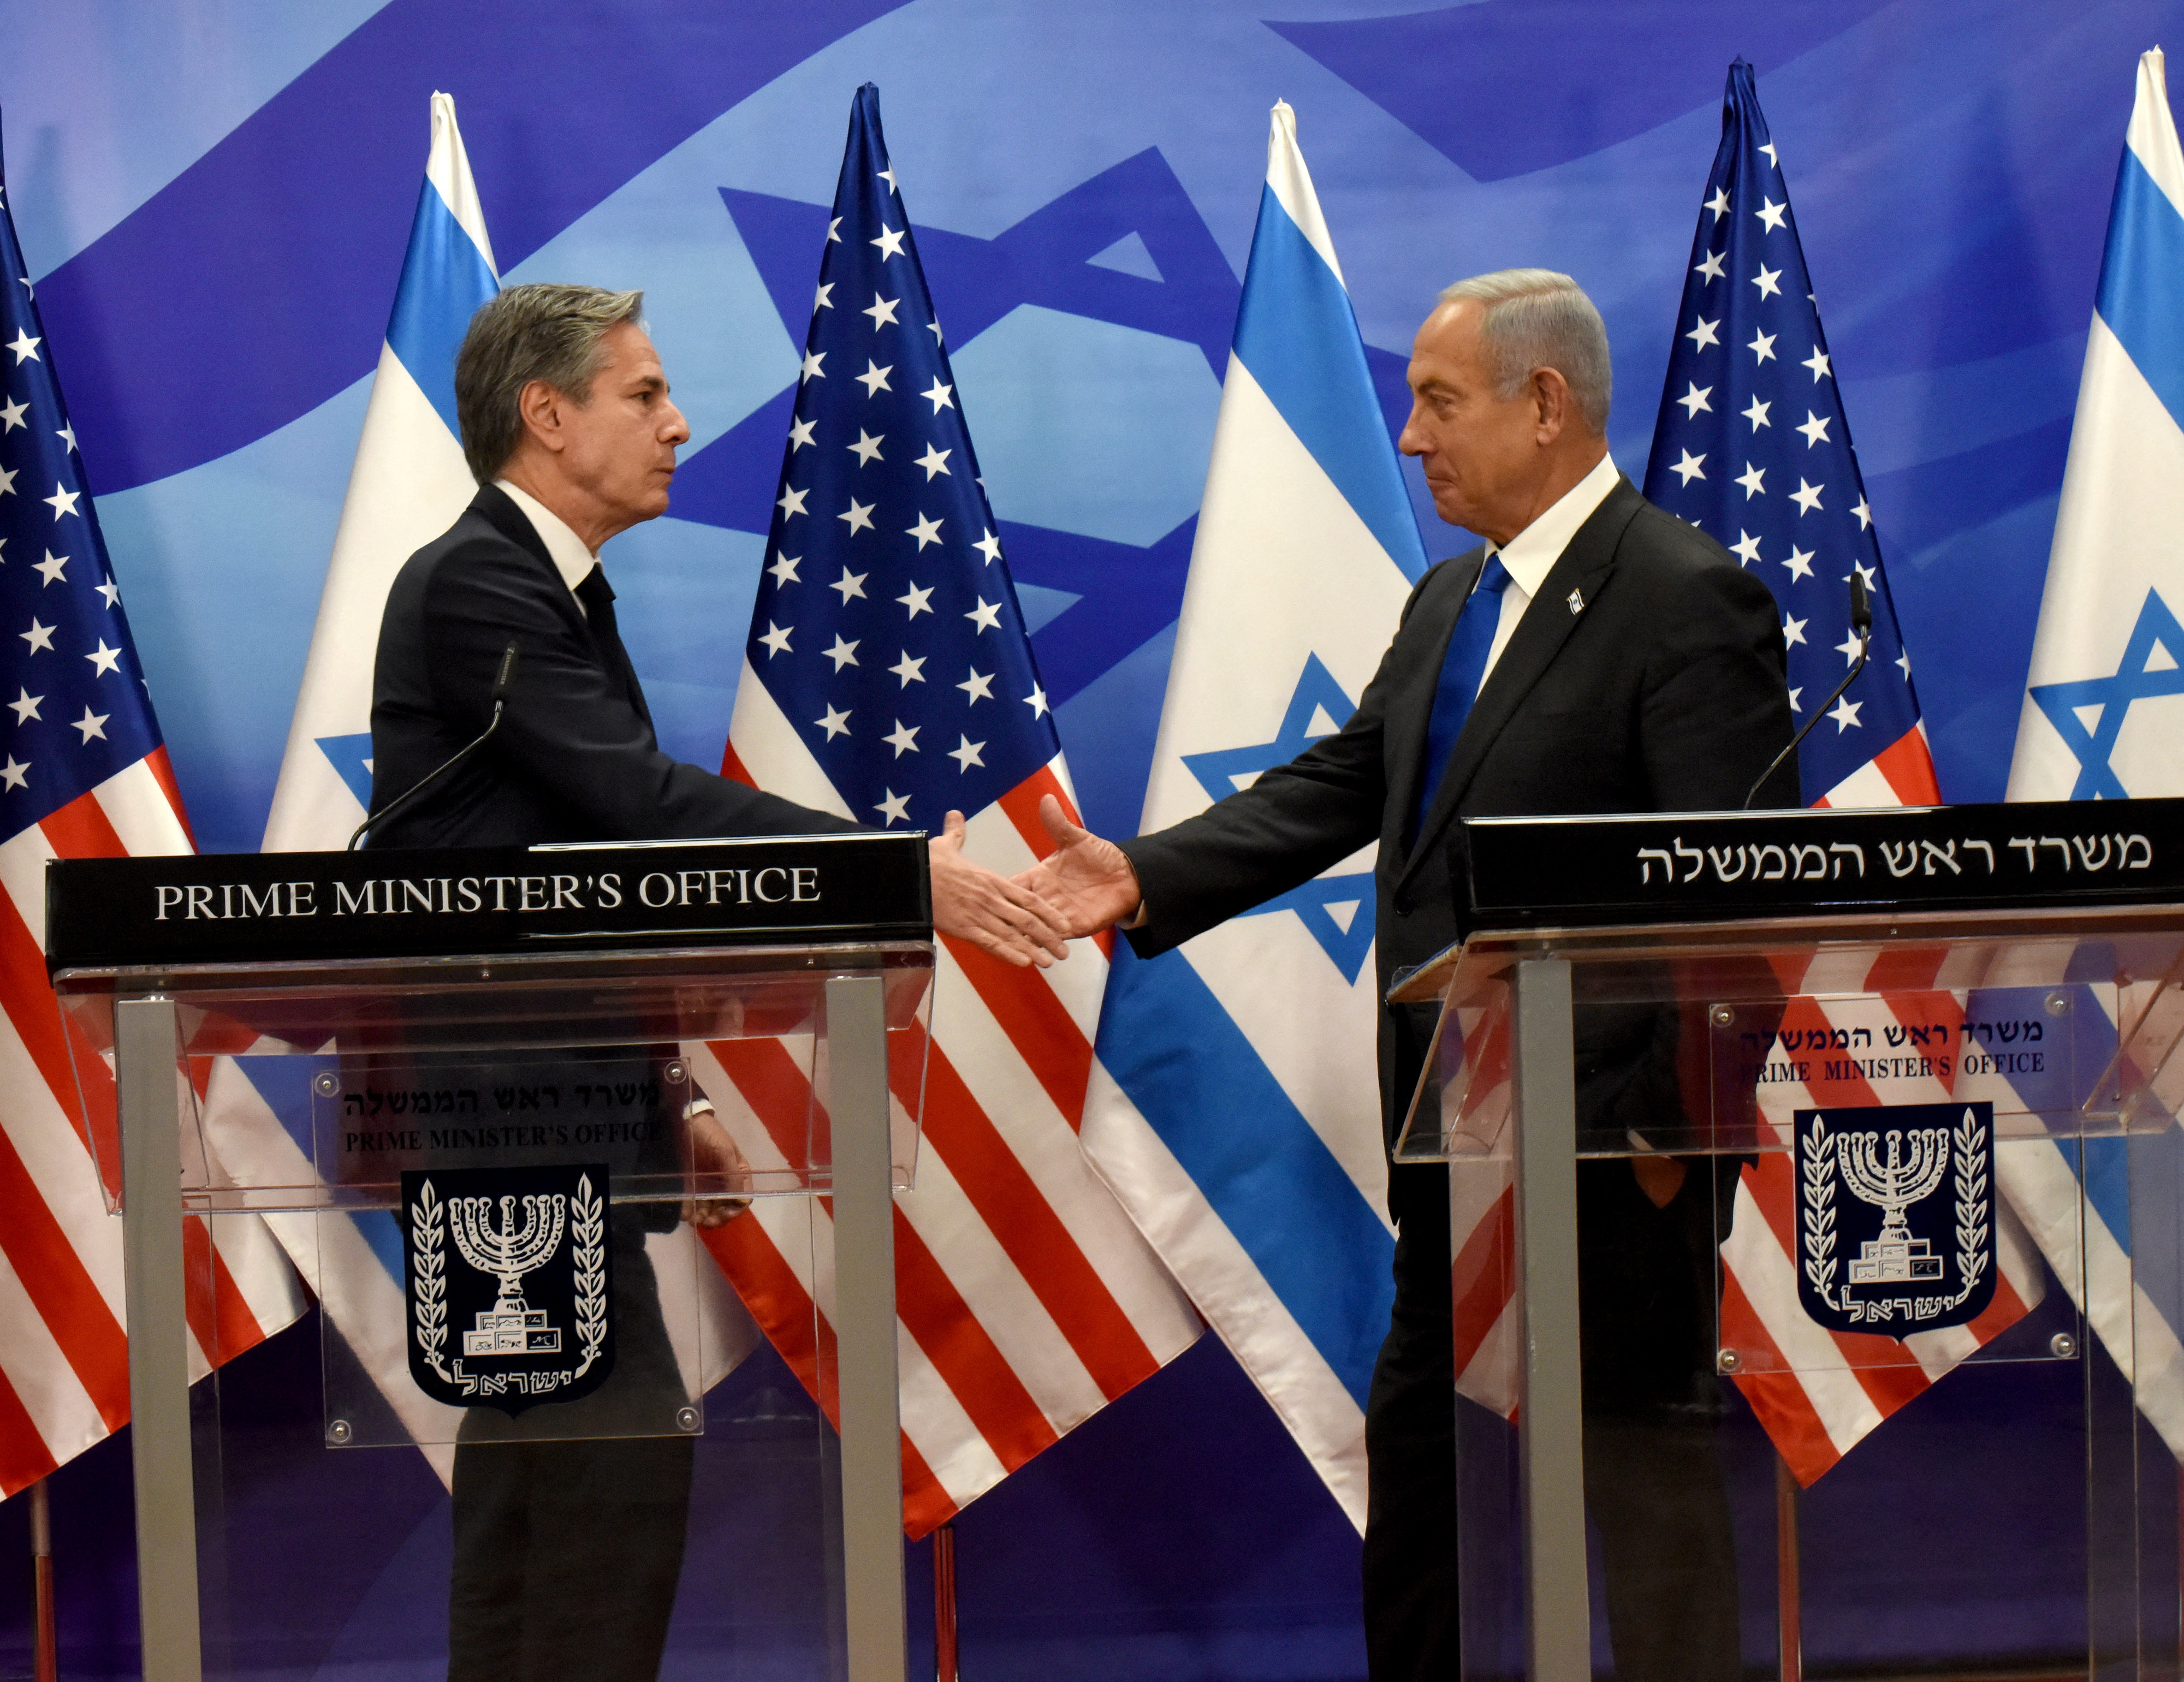 EEUU pidió a Israel y Palestina restablecer la calma y abogó por una solución negociada del conflicto